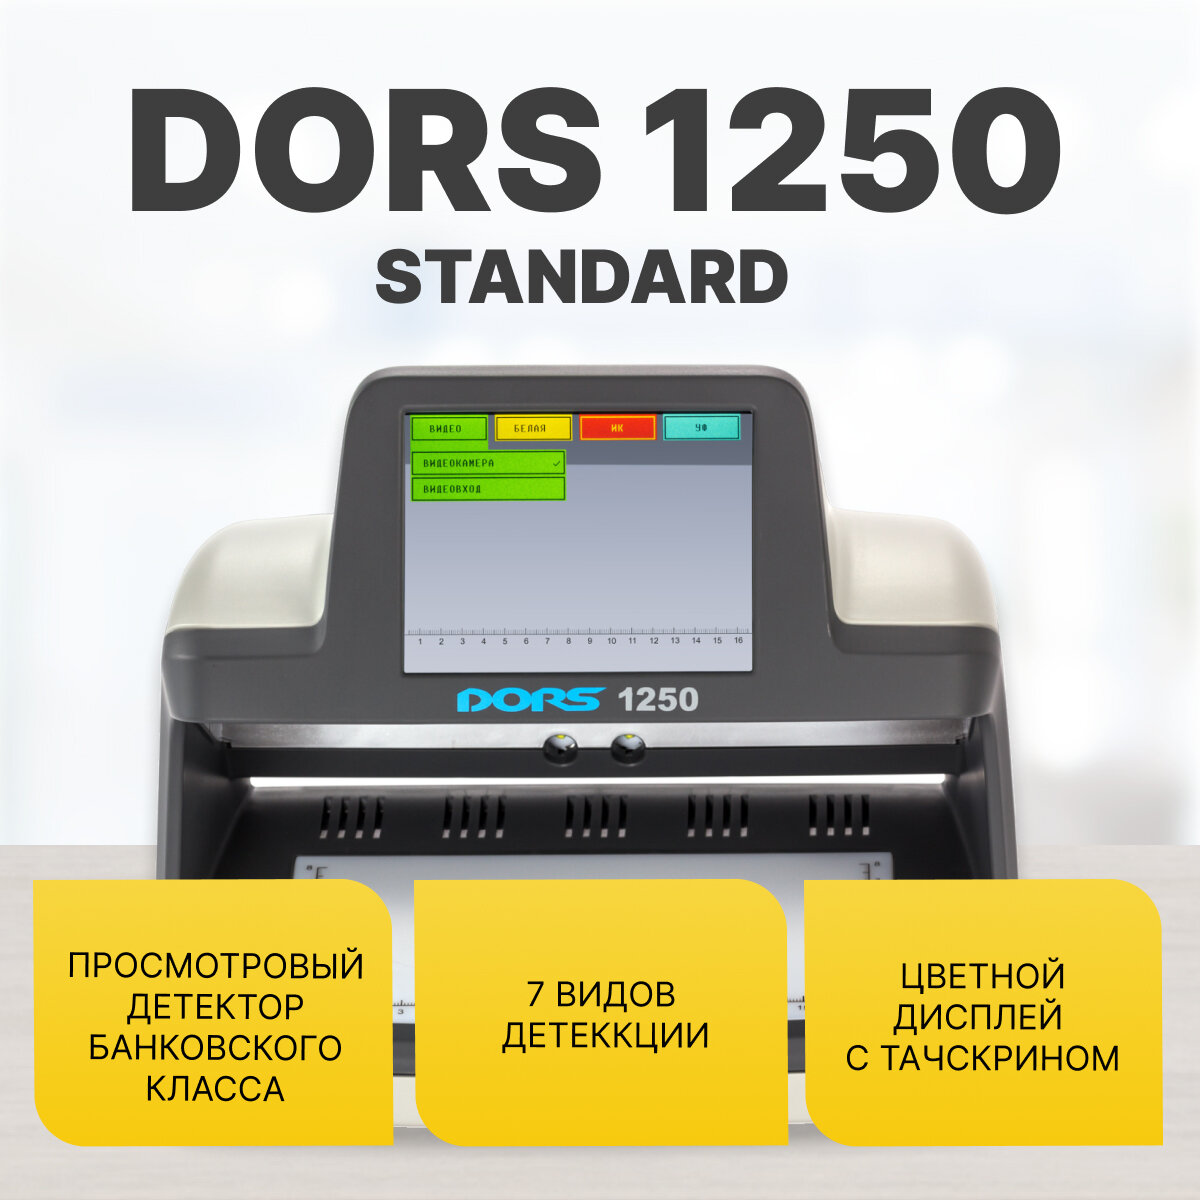 Универсальный просмотровый детектор DORS 1250 STANDARD